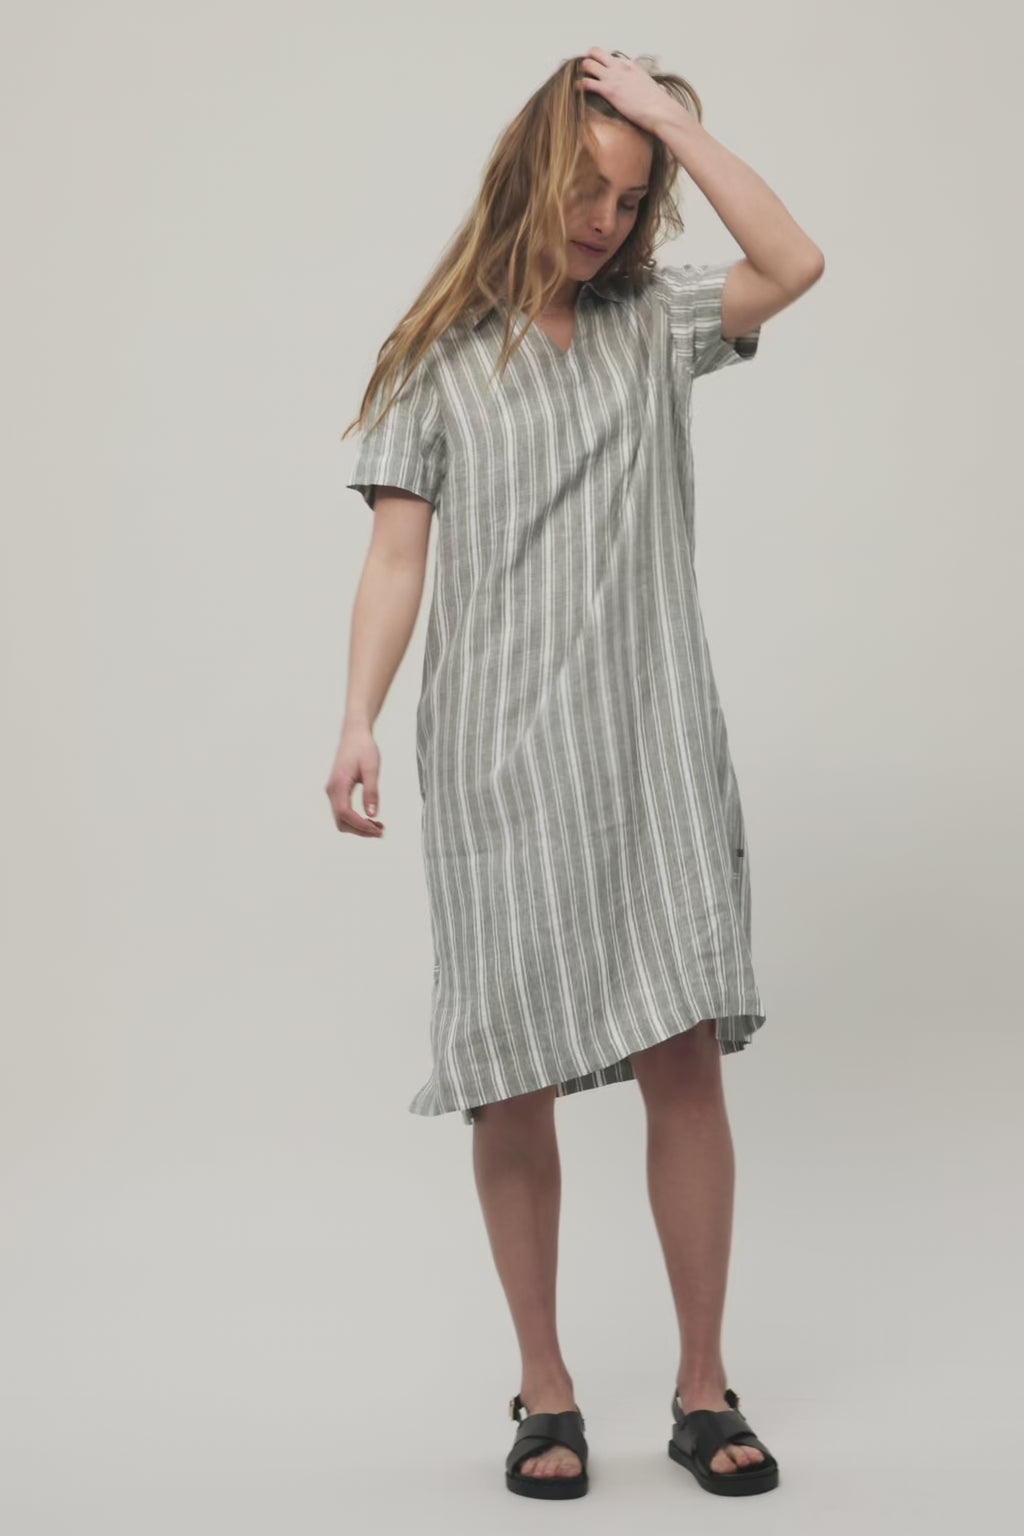 REDGREEN WOMAN Alison Dresses / Shirts 170 Green Pastel Stripe